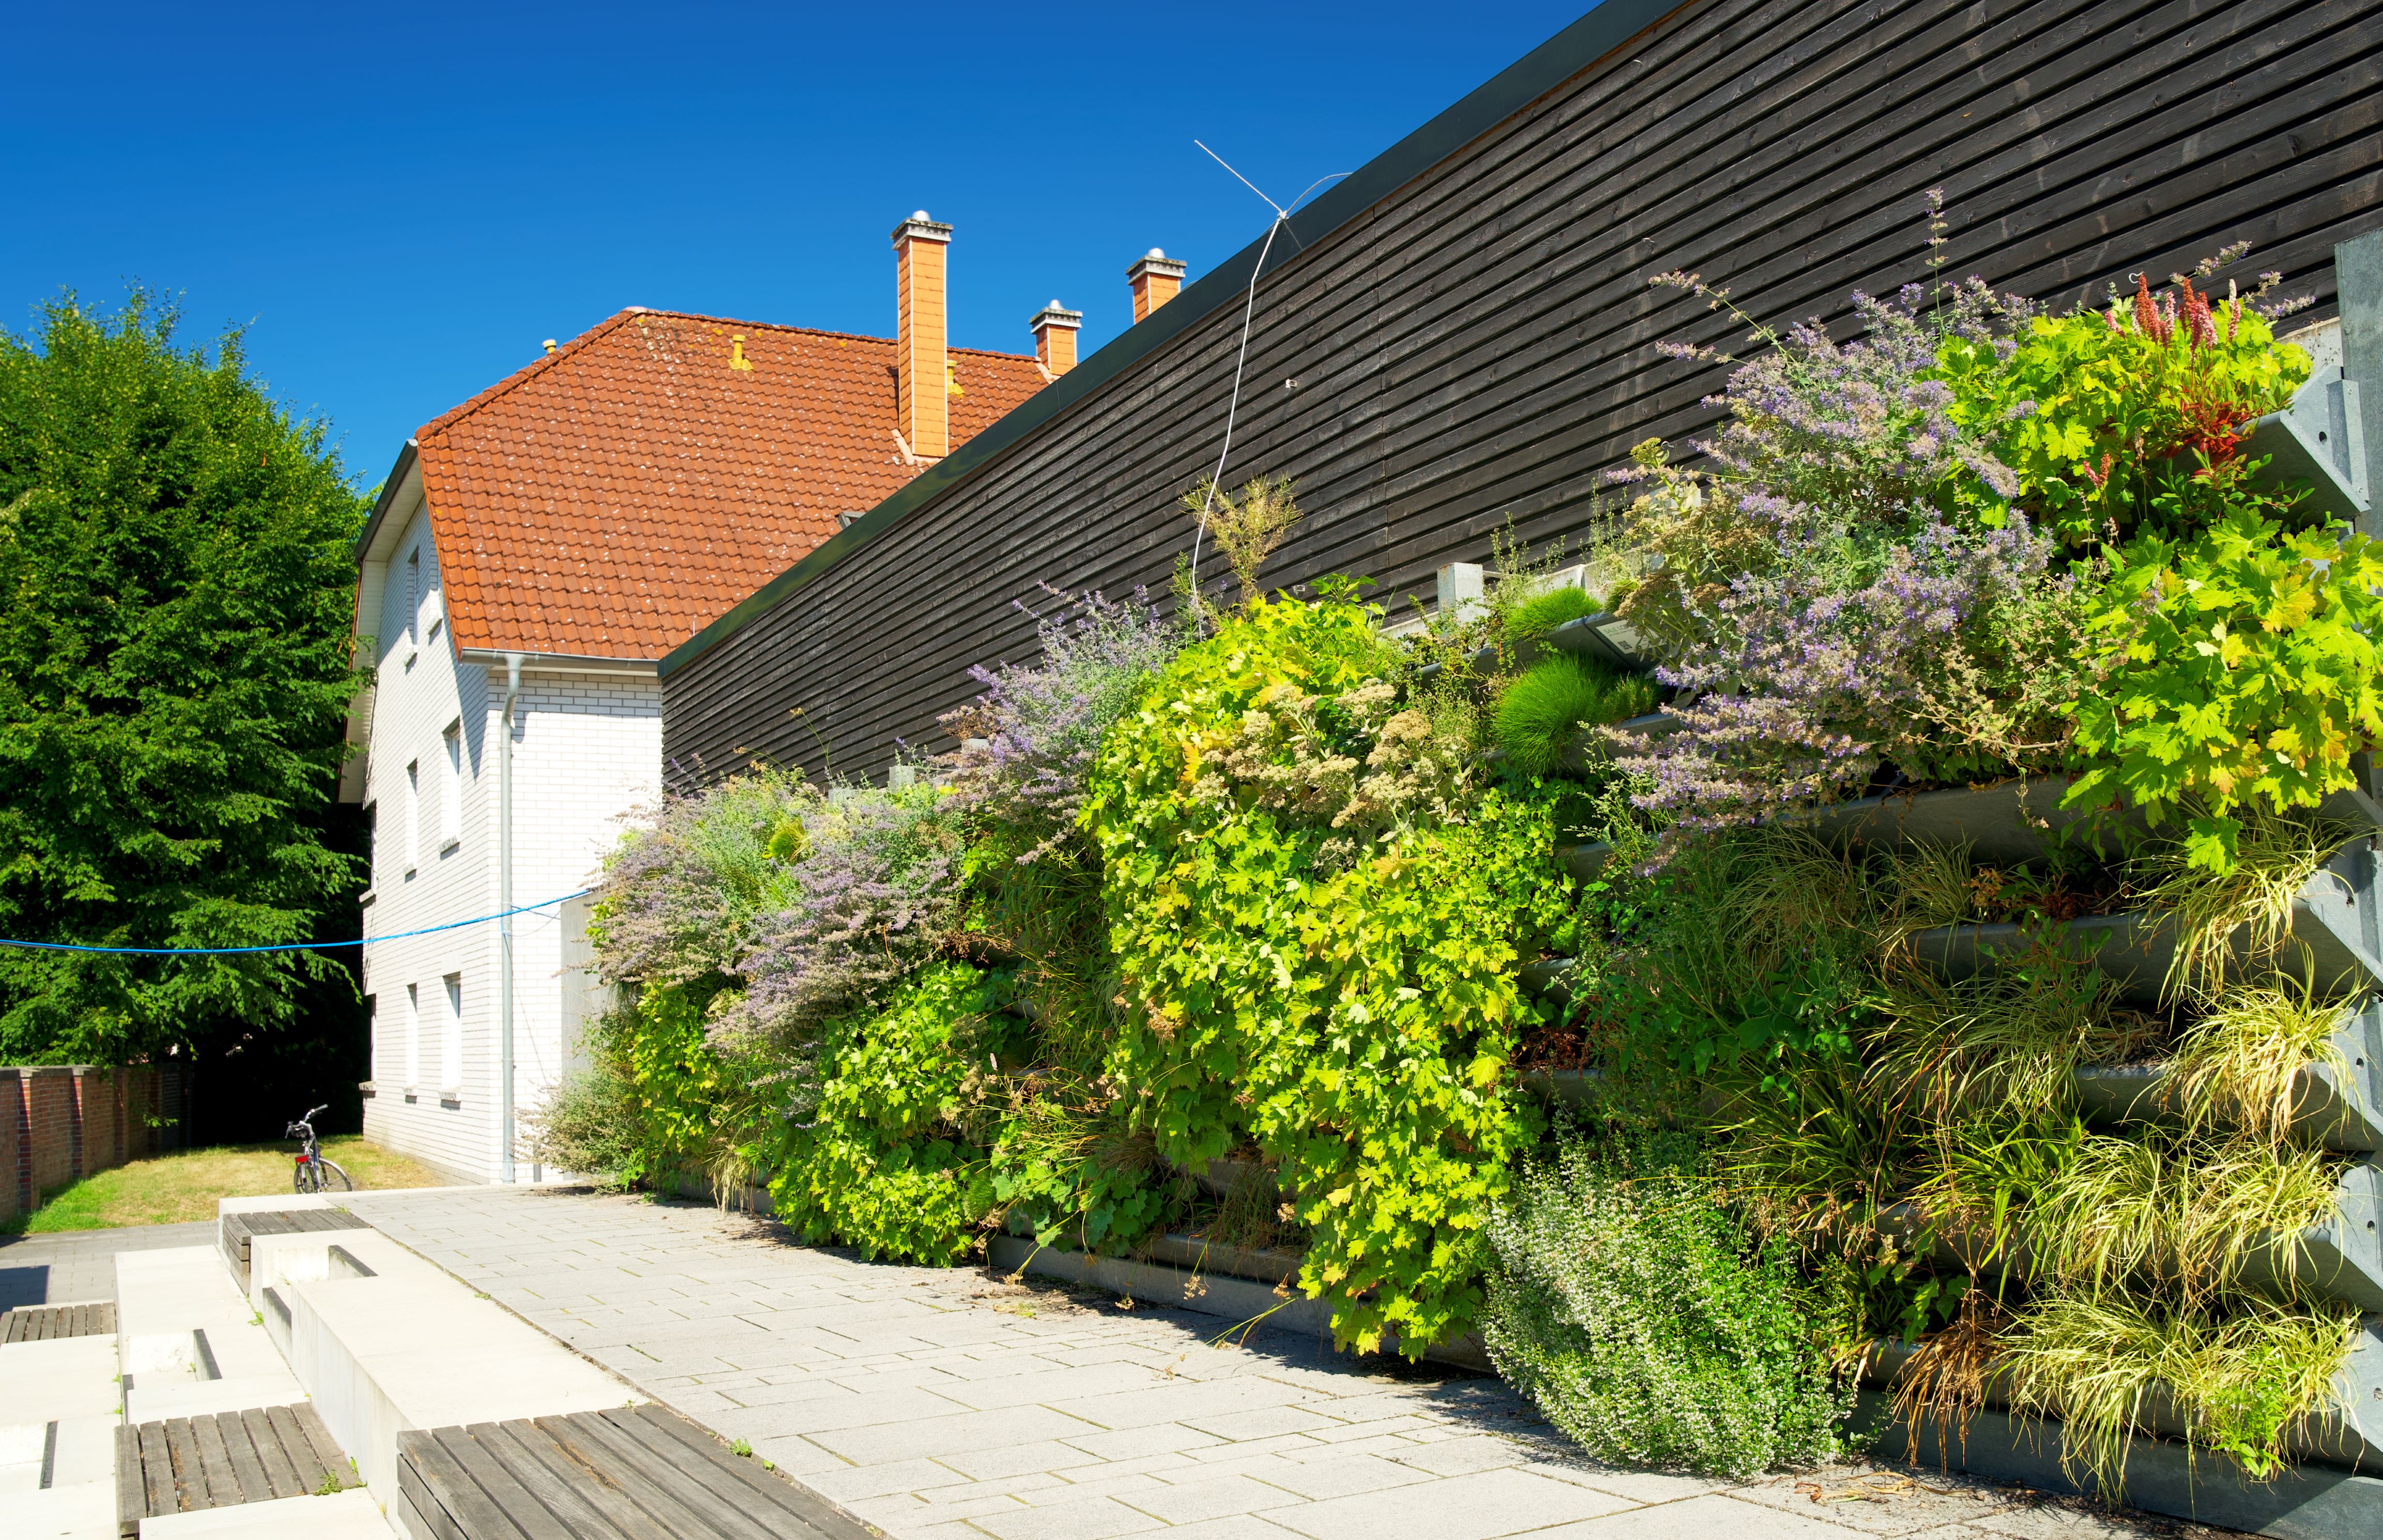 Save Lodge introduceert de save wall: de duurzaamste groene gevel van Nederland